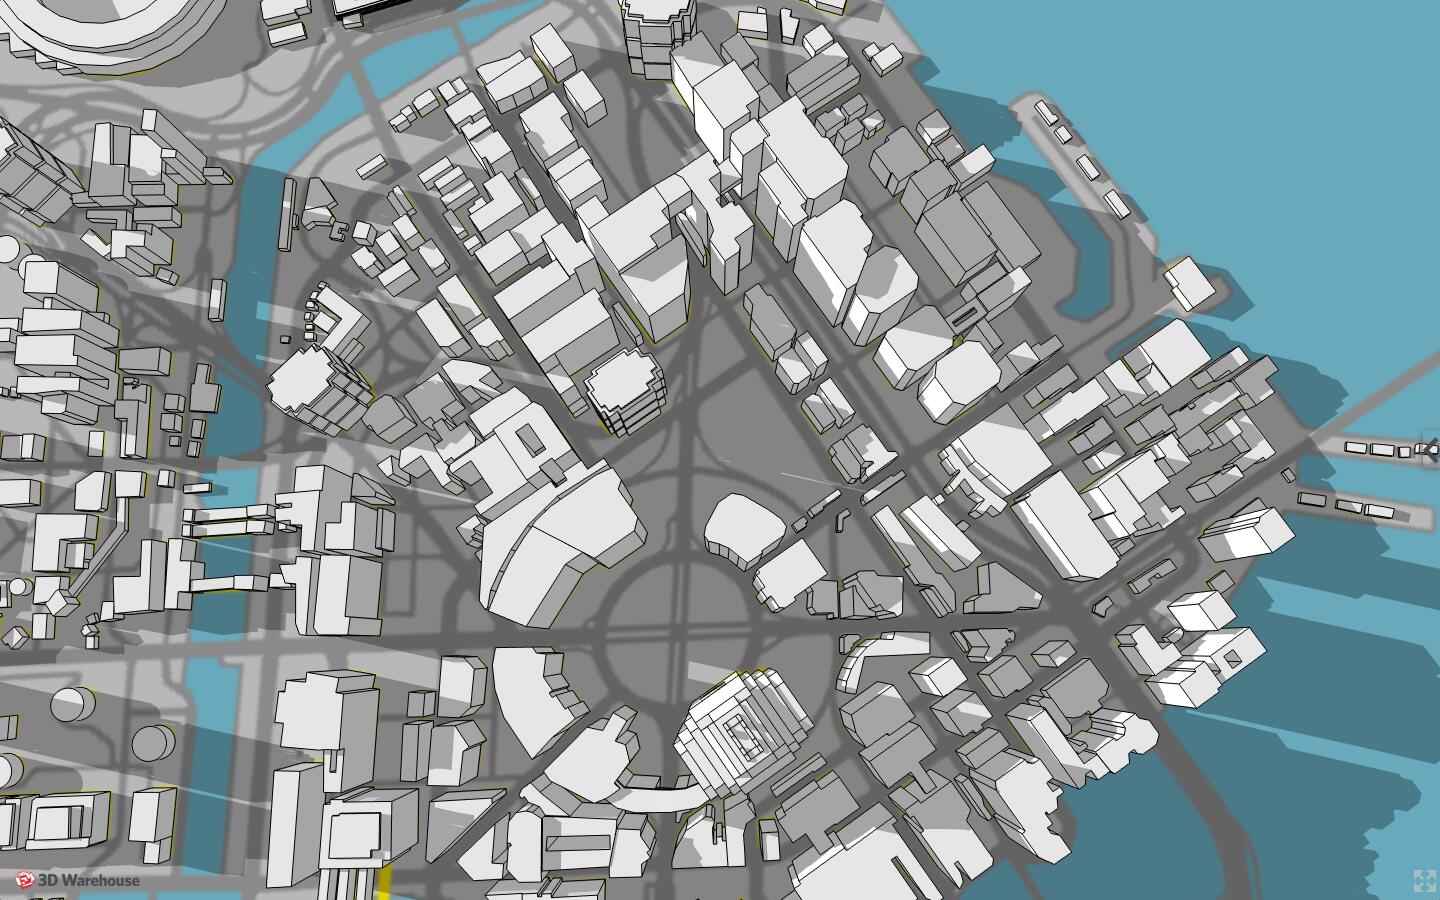 粉丝自制《赛博朋克2077》3D地图模型 展示夜之城